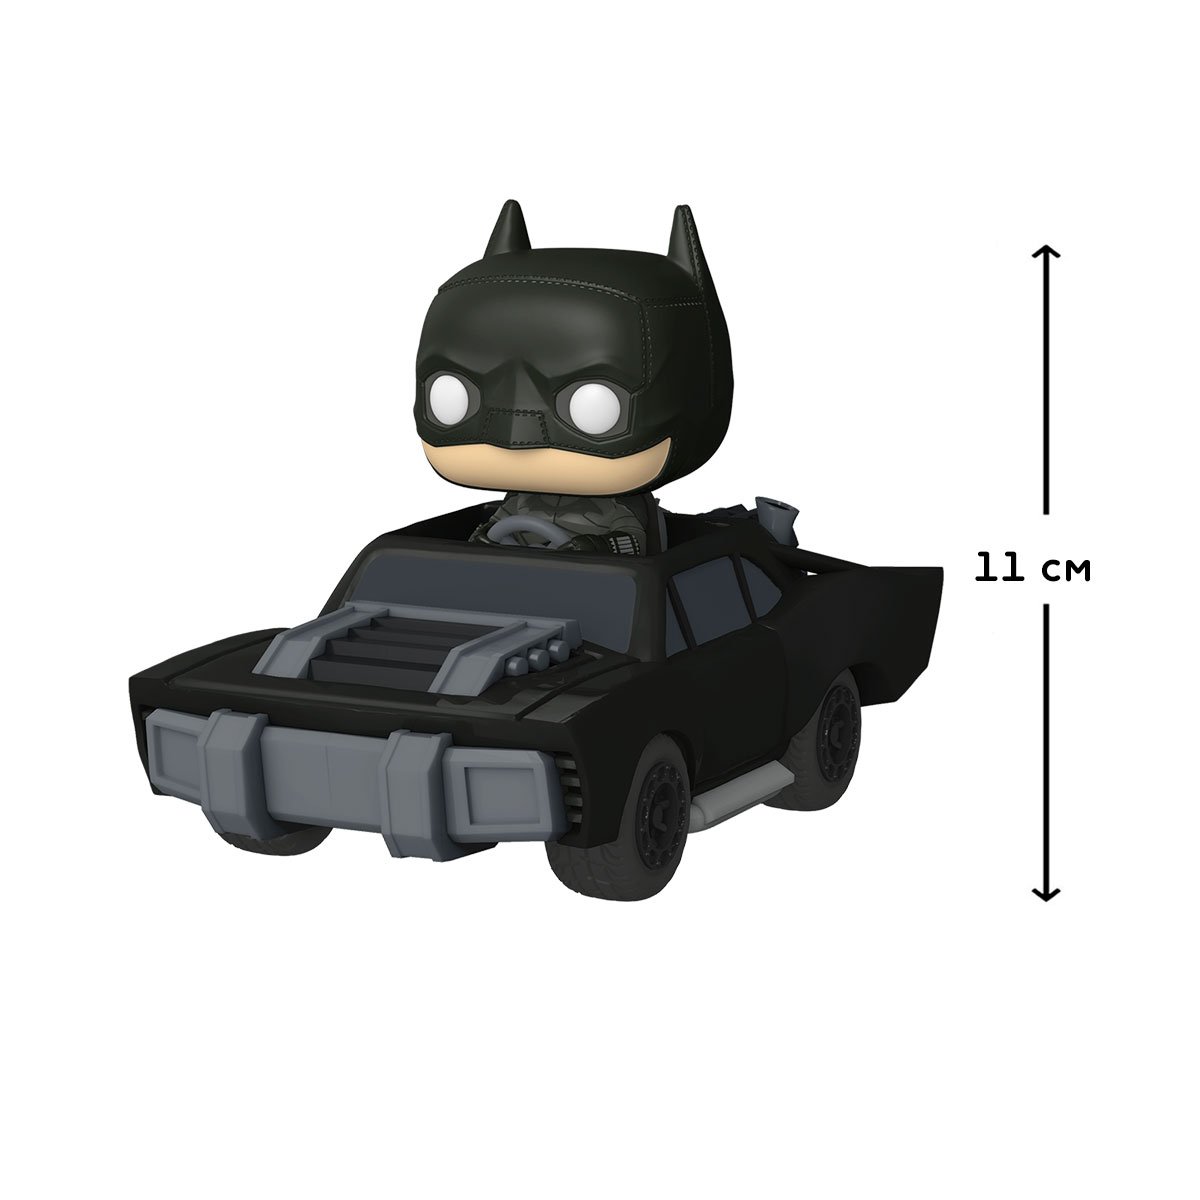 Ігрова фігурка Funko Pop! Бетмен в бетмобілі, 11 см (59288) - фото 2